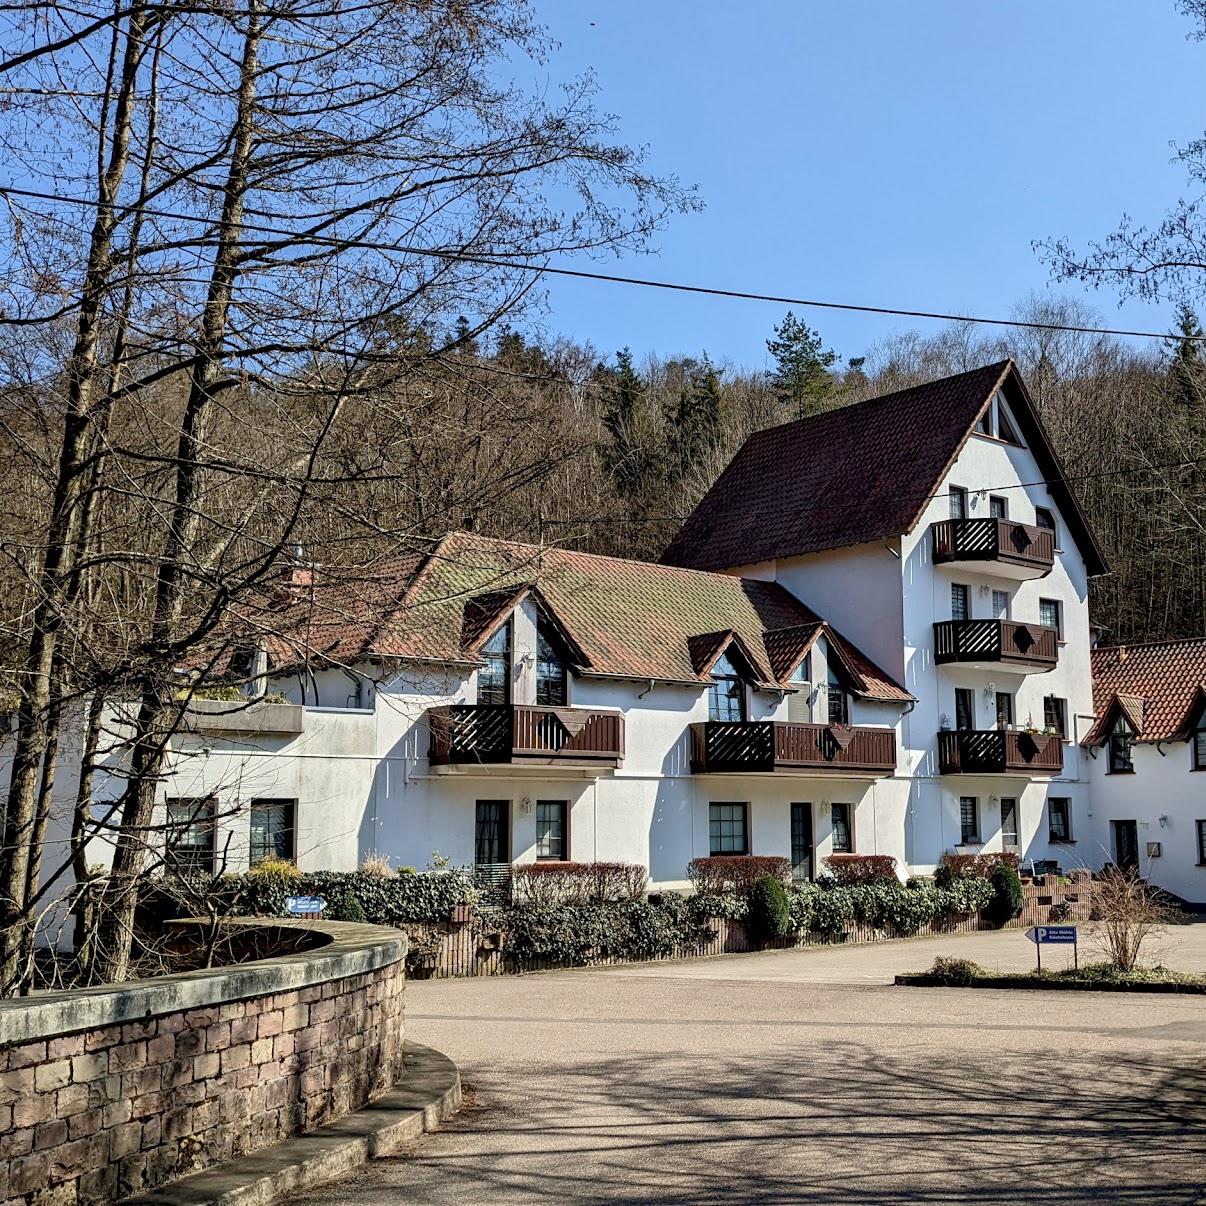 Restaurant "Gästehaus Alte Mühle" in Nonnweiler